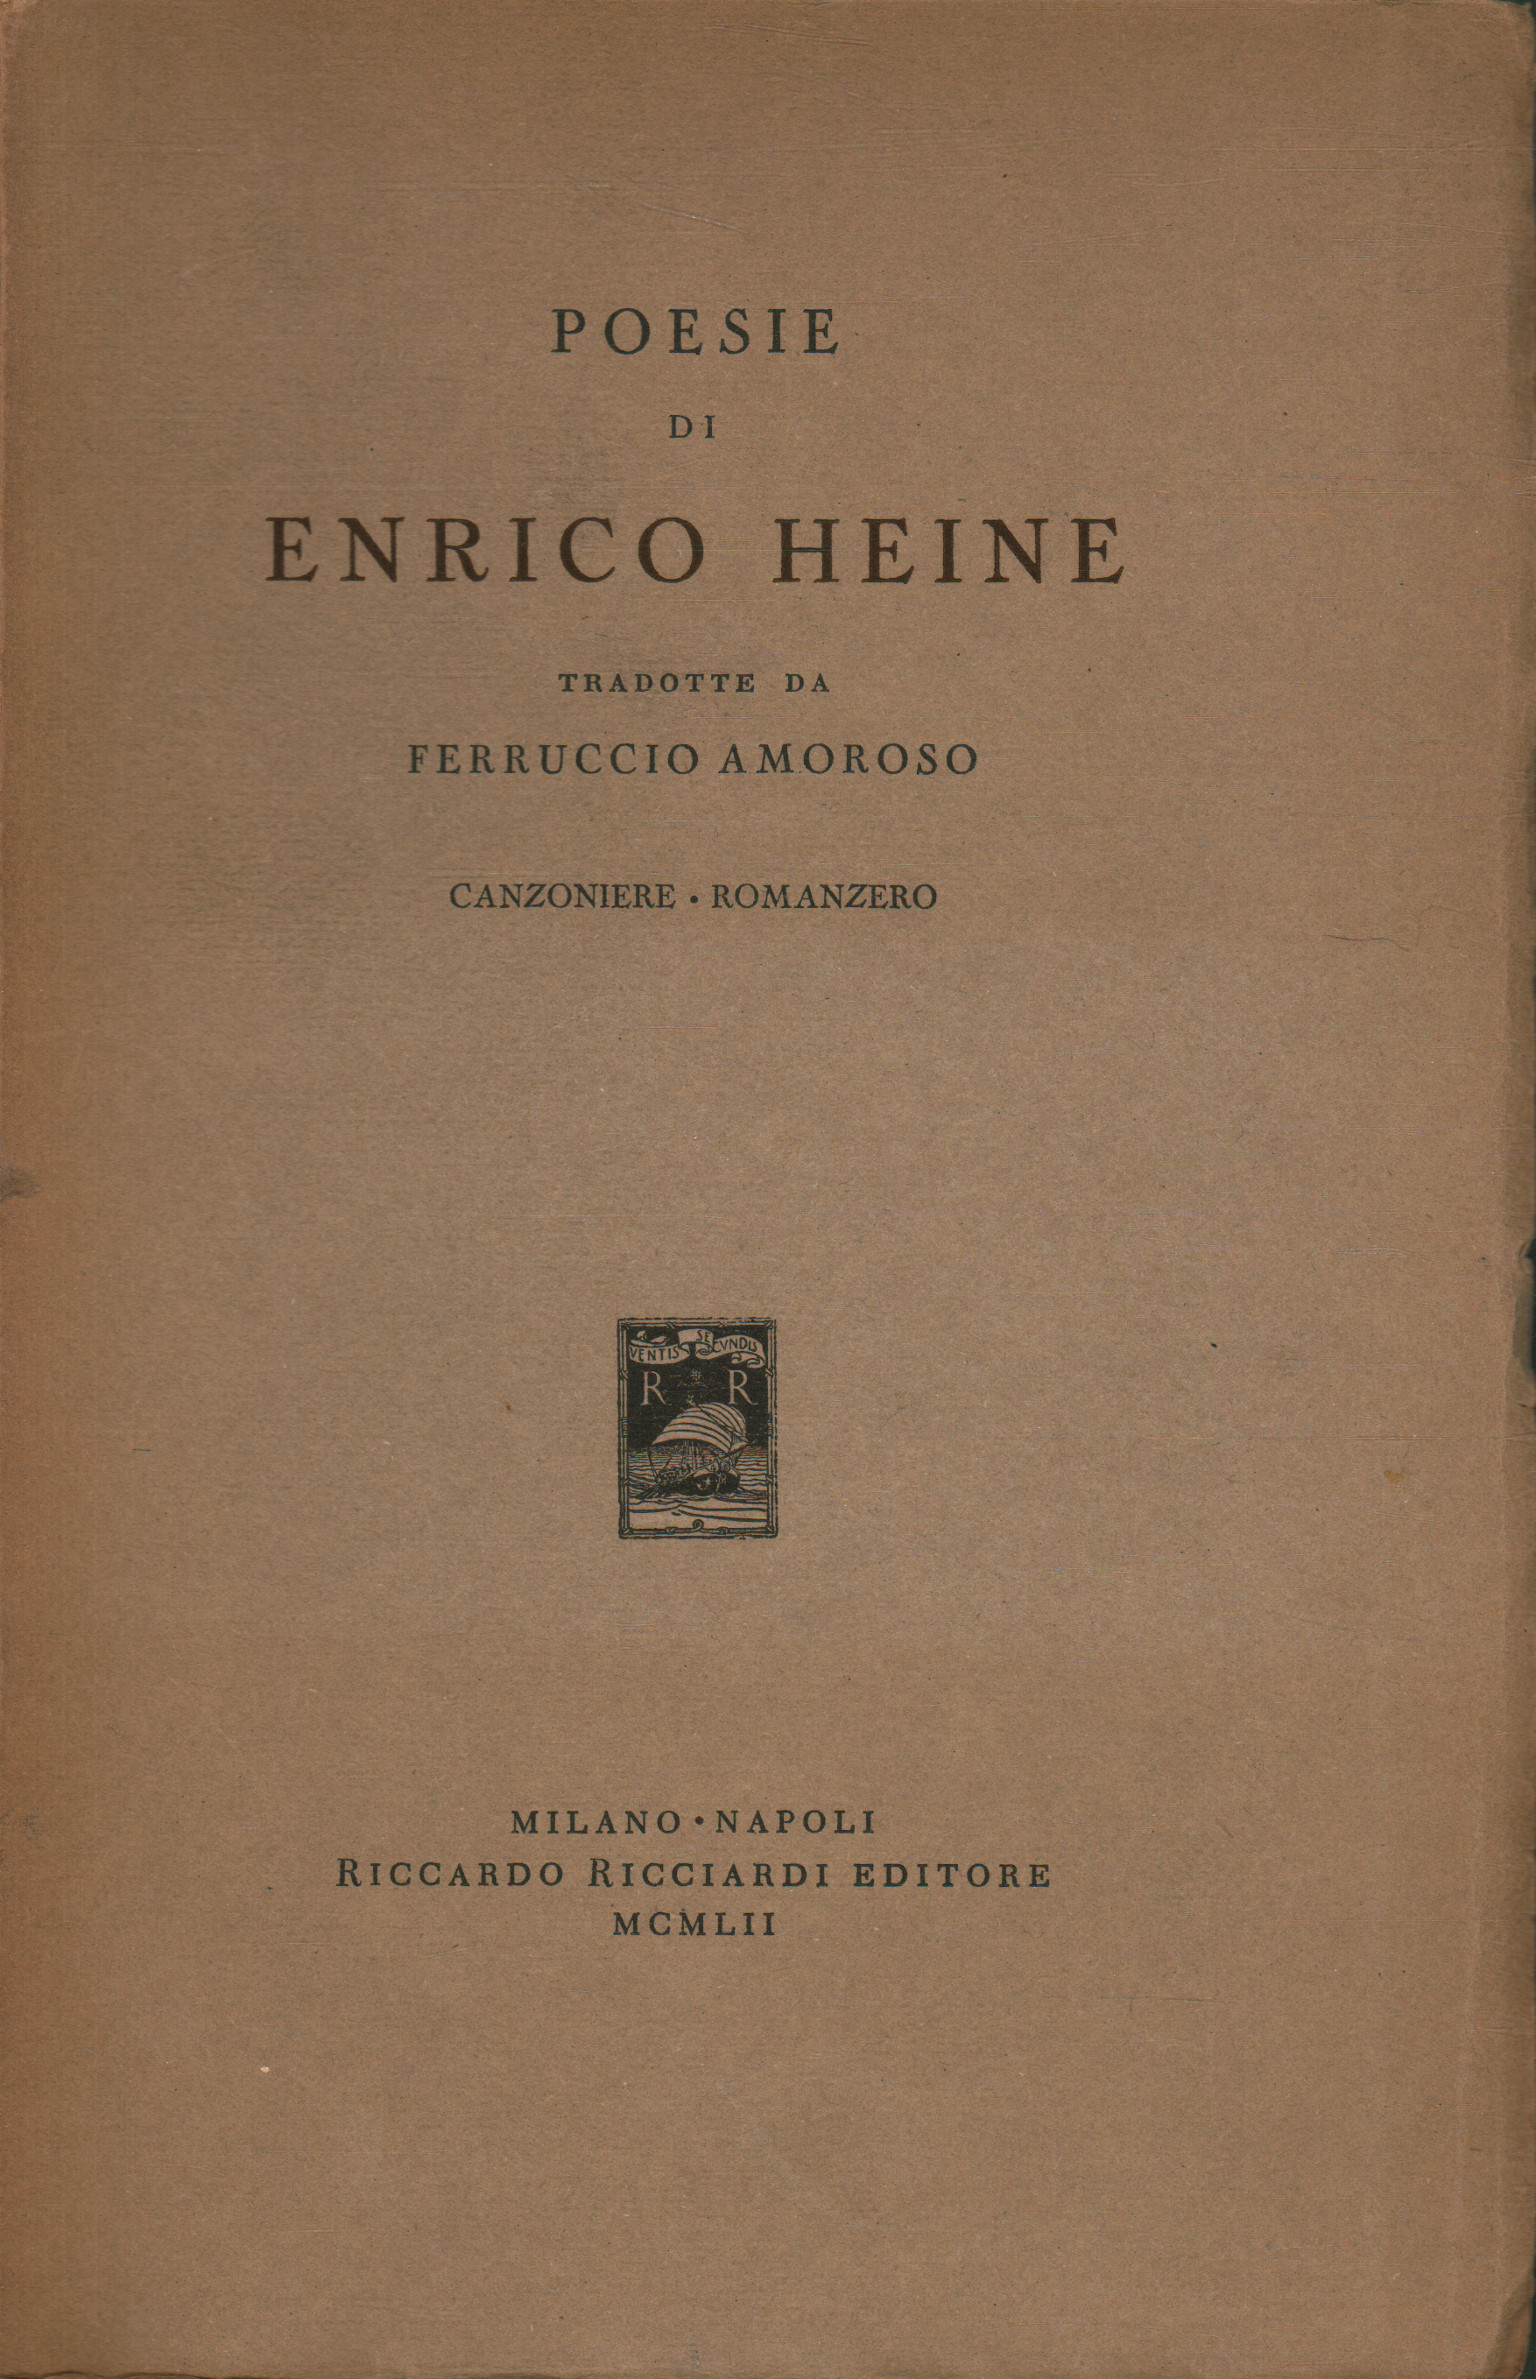 Poemas de Enrico Heine